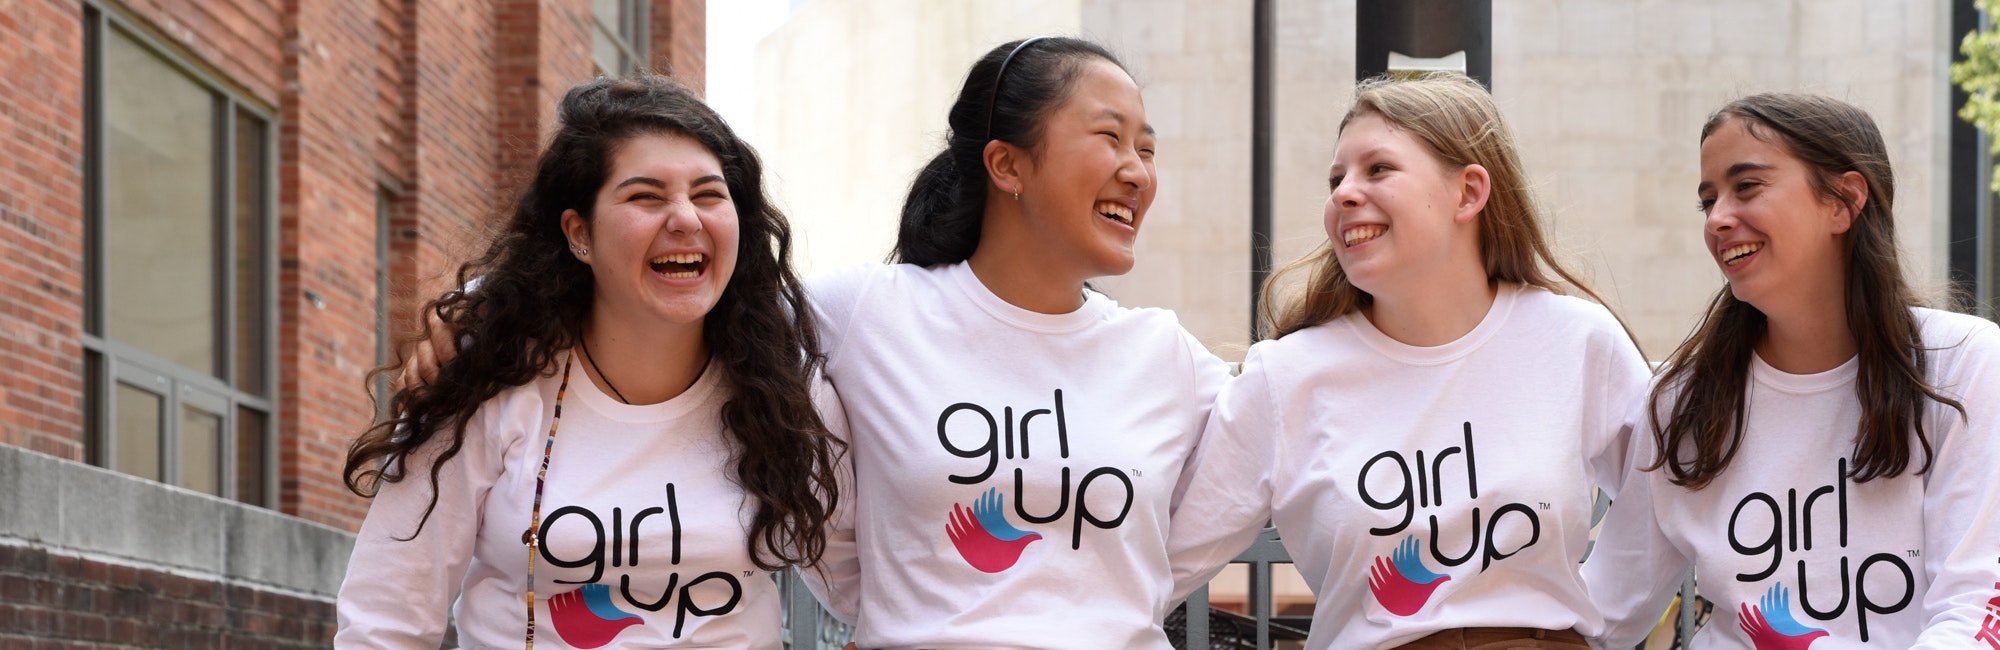 4 filles de différentes origines ethniques portant le t-shirt Girl Up (photo de groupe) ont leurs mains dans le dos les unes des autres.